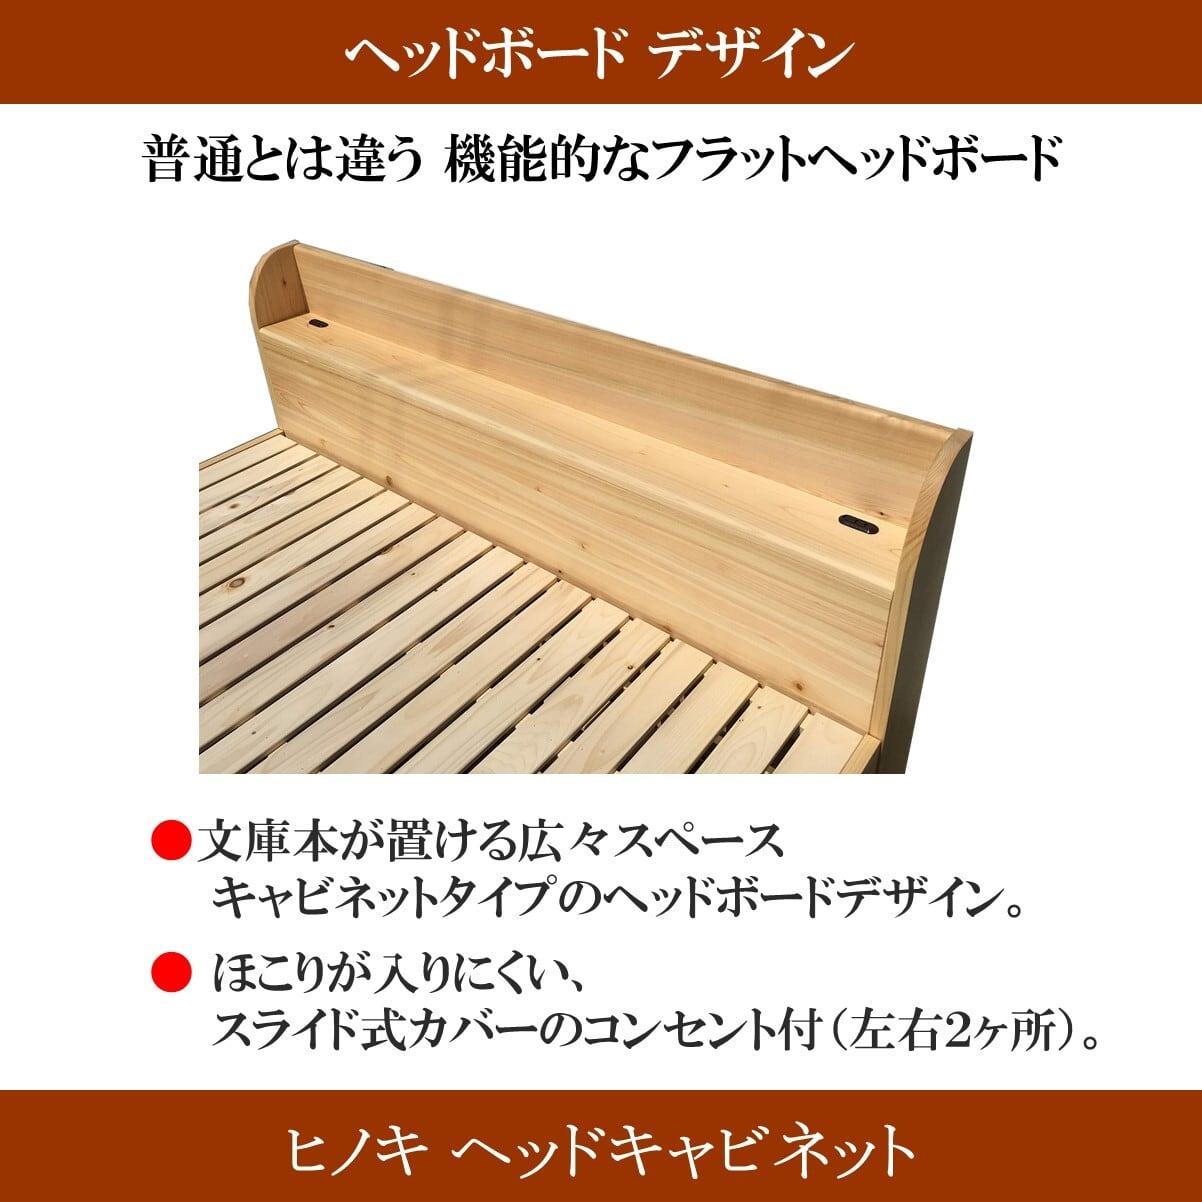 すのこベッド ダブルサイズ「森の寝床」国産ヒノキで作った竹炭入り健康ベッド